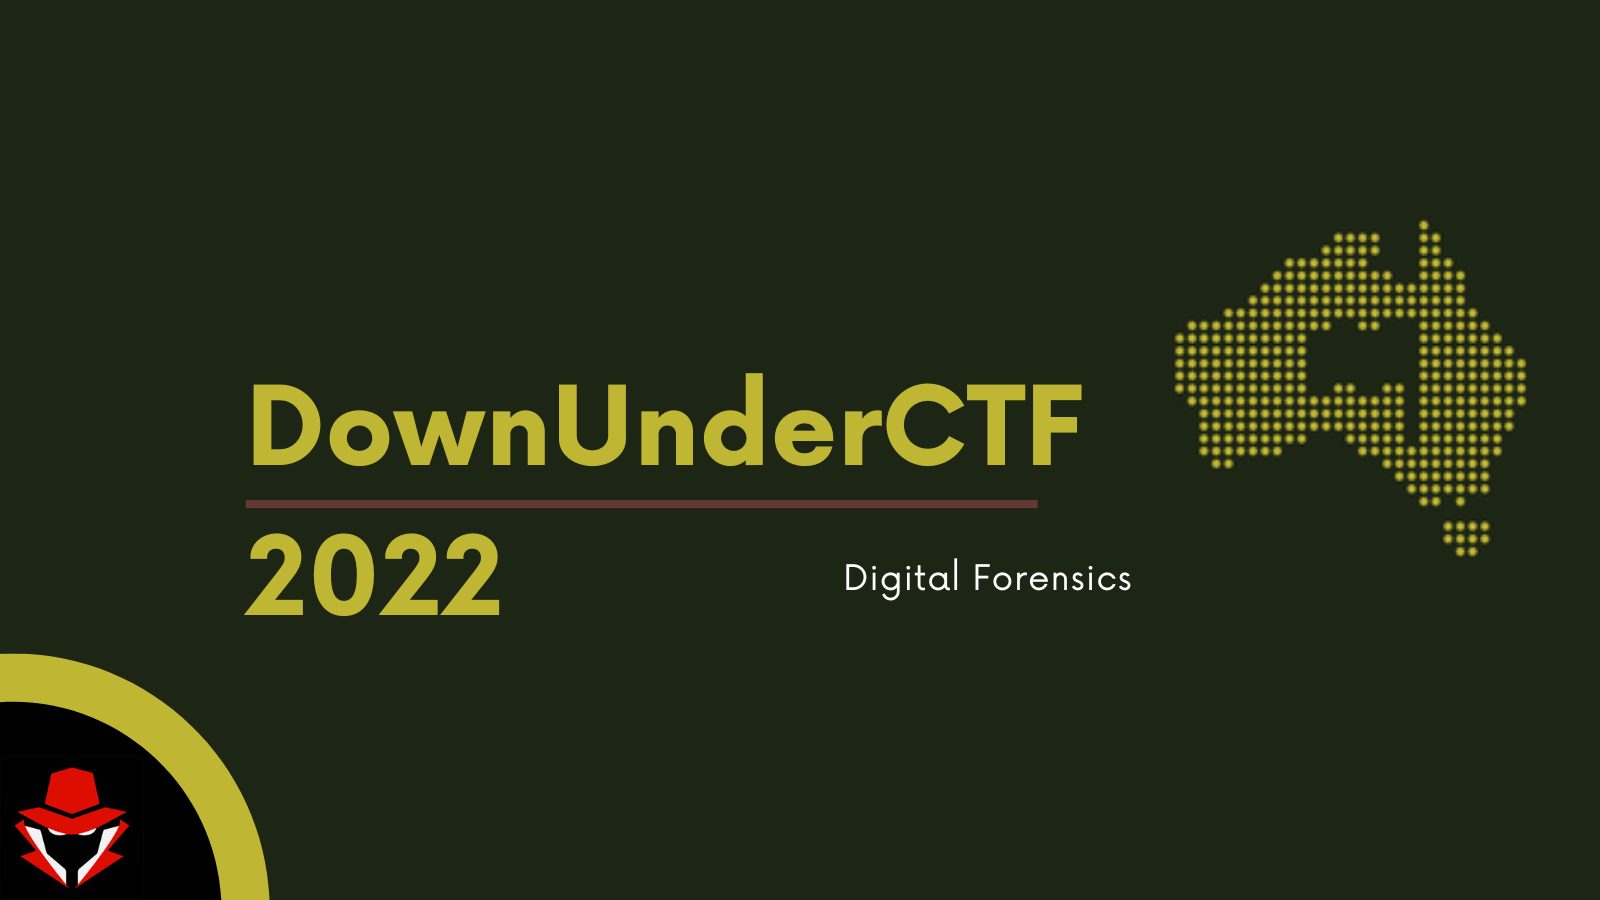 DownUnderCTF 2022 image